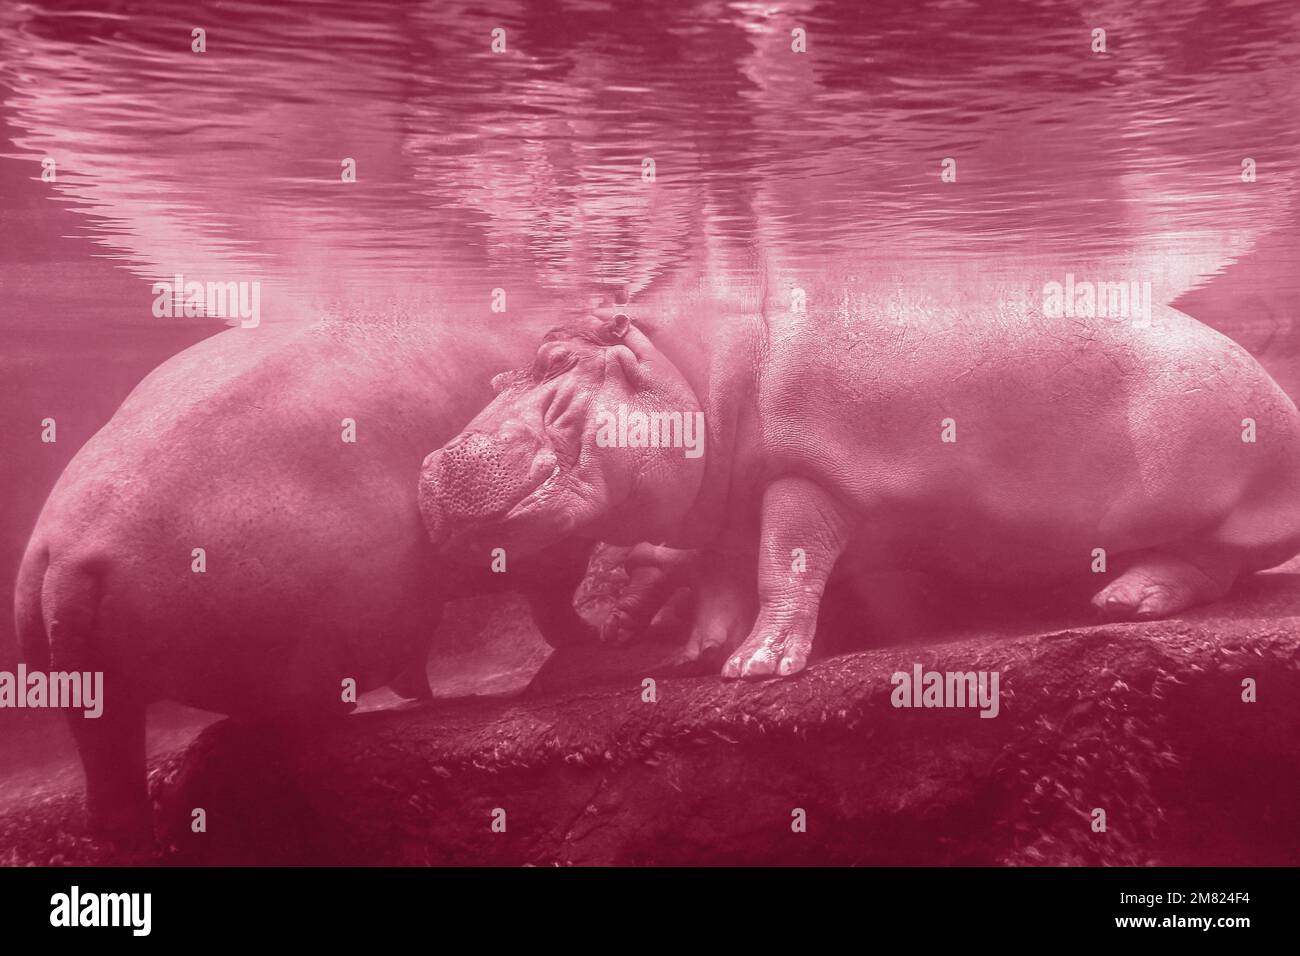 Un primo piano di un ippopotamo sotto l'acqua allo zoo. Hippo sta riposando sotto l'acqua. L'immagine è tondata nel colore Viva Magenta dell'anno 2023 Foto Stock